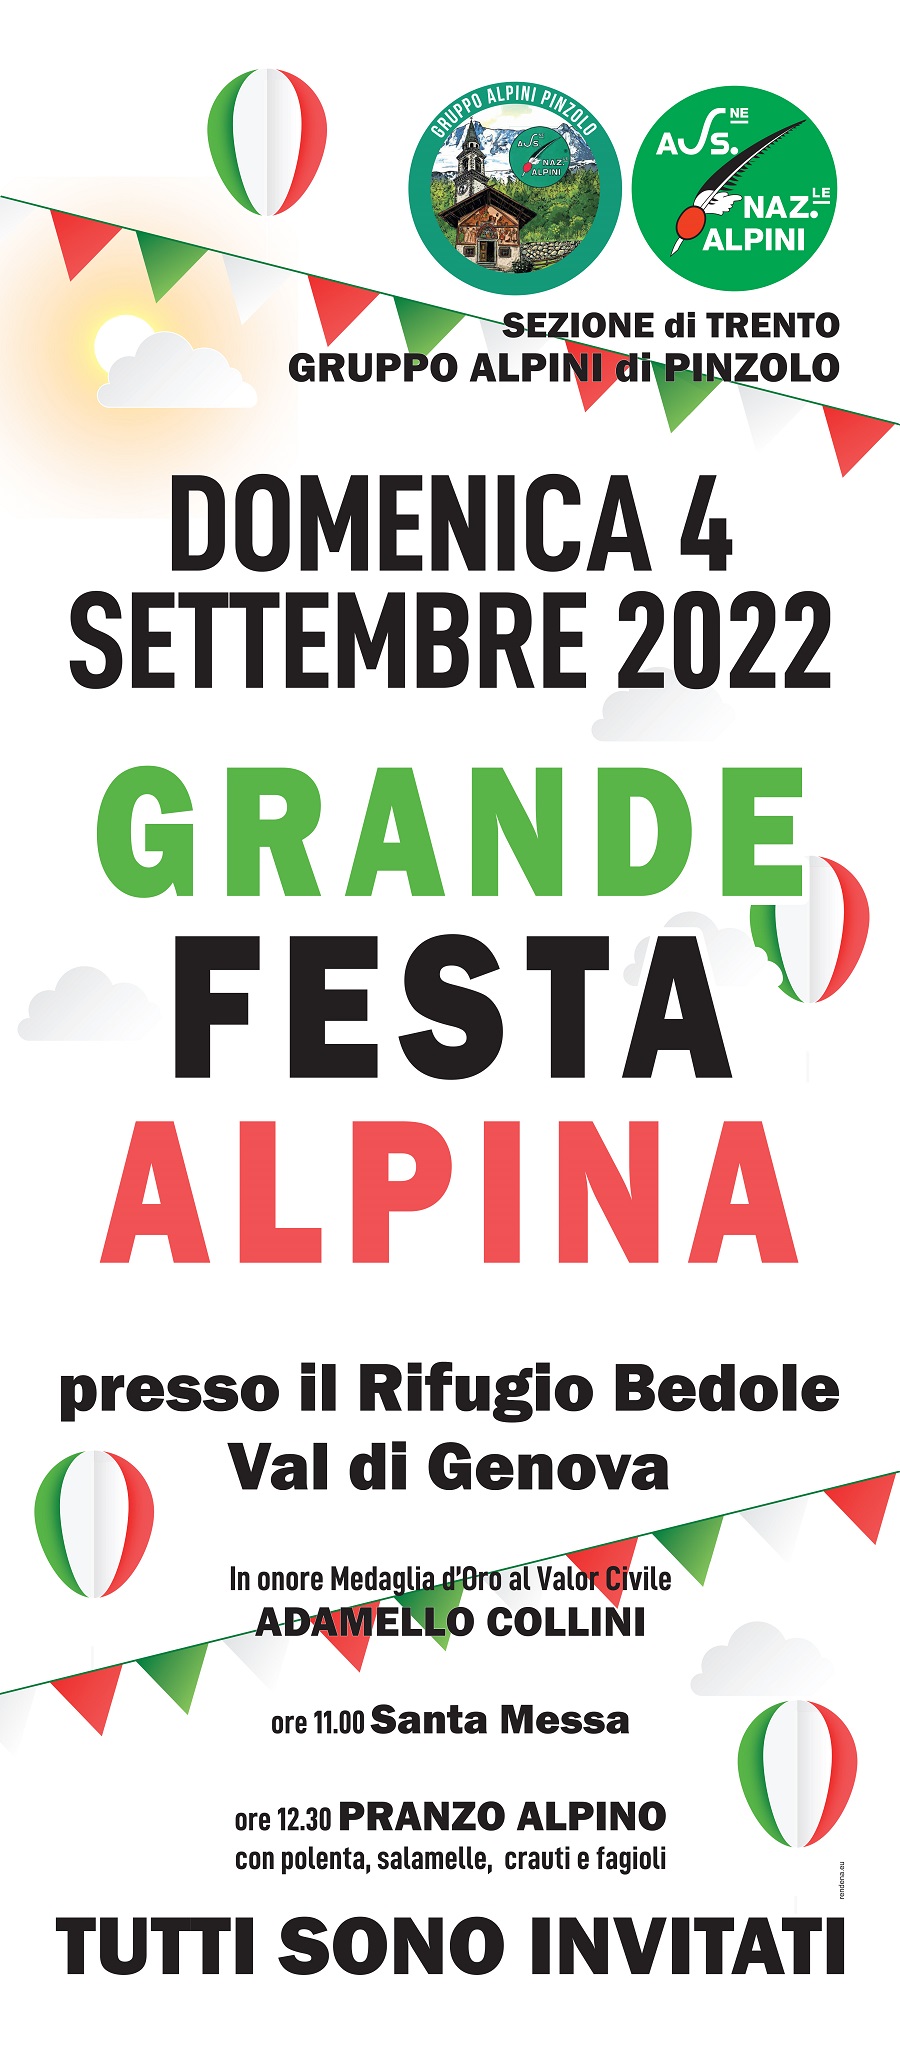 Domenica 4 settembre: Grande Festa Alpina al rifugio Bedole